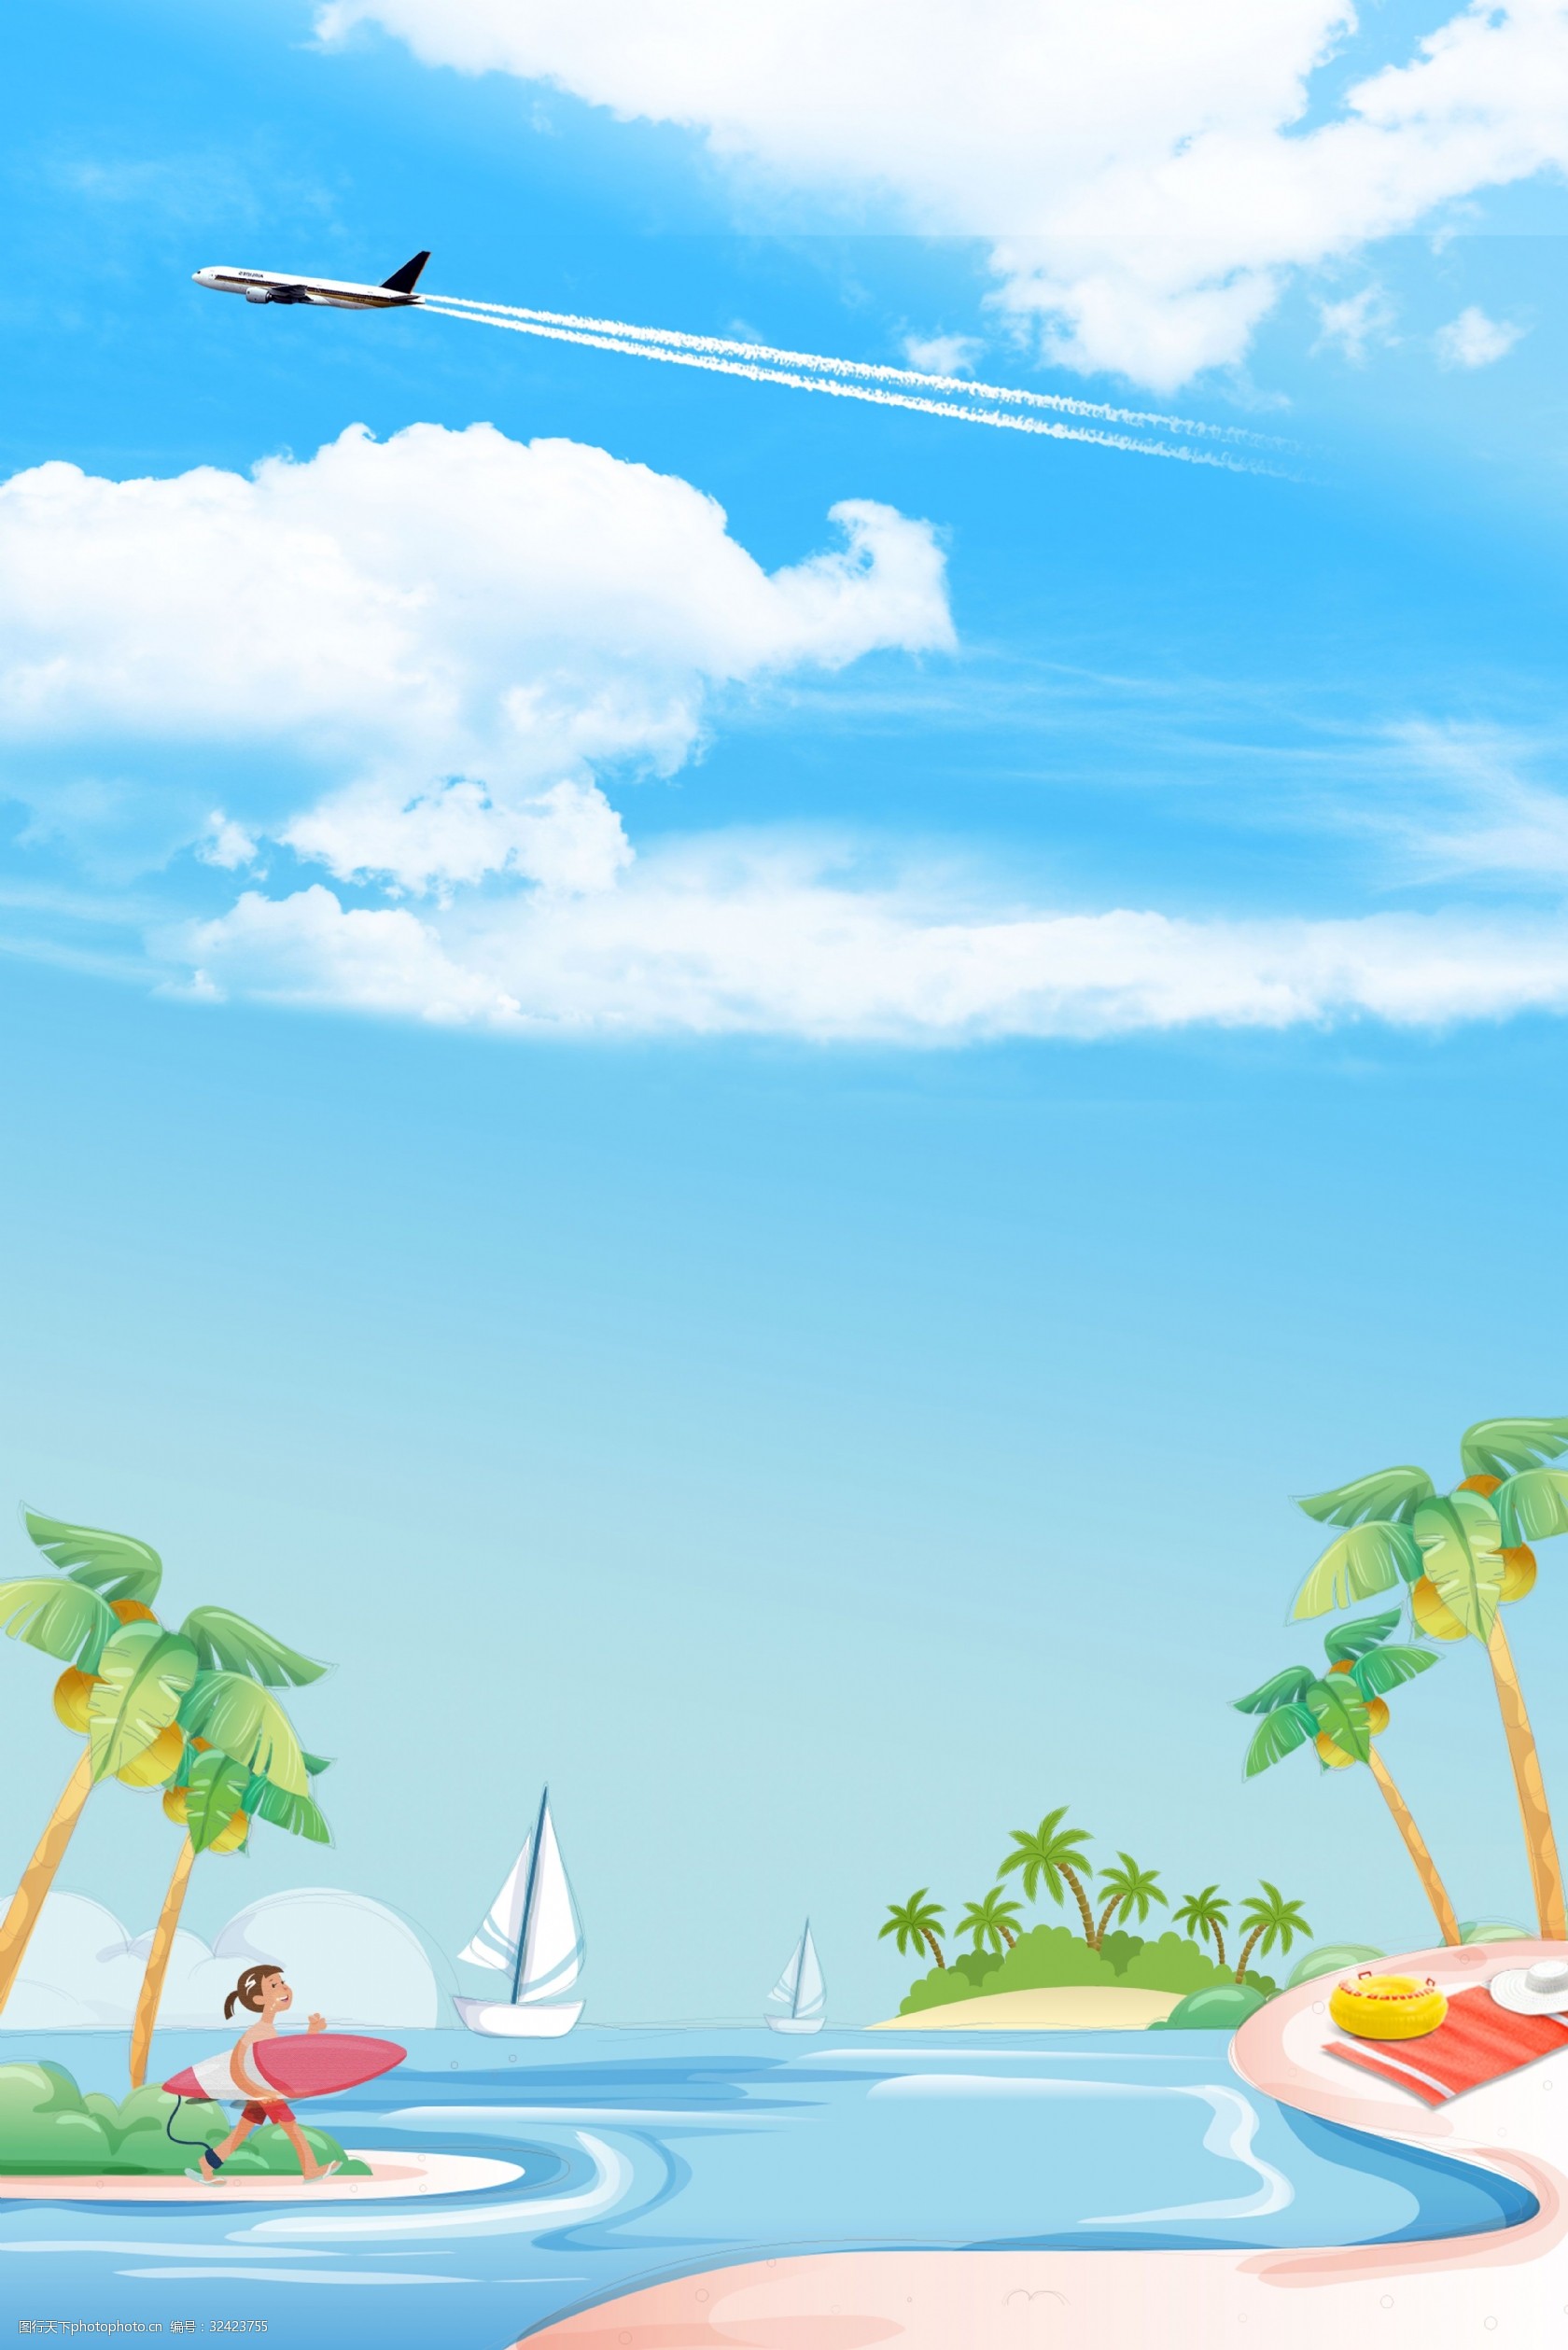 关键词:海岛游度假卡通背景合成海报 旅游 海岛游 大海 椰树 帆船